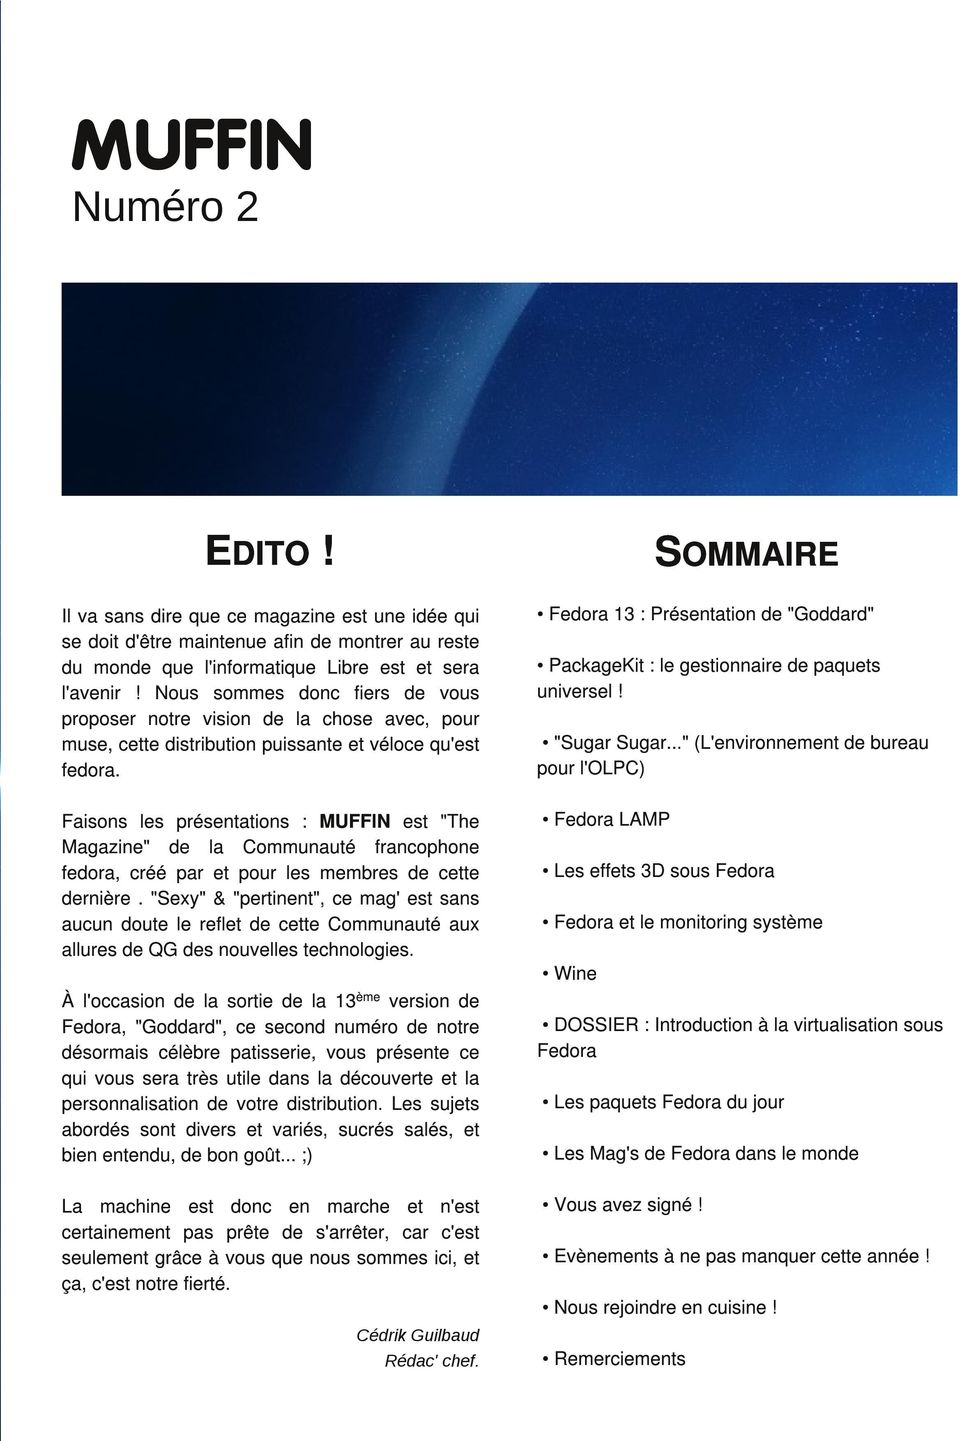 Fedora 1 3 : Présentation de "Goddard" Faisons les présentations : MUFFIN est "The Magazine" de la Communauté francophone fedora, créé par et pour les membres de cette dernière.